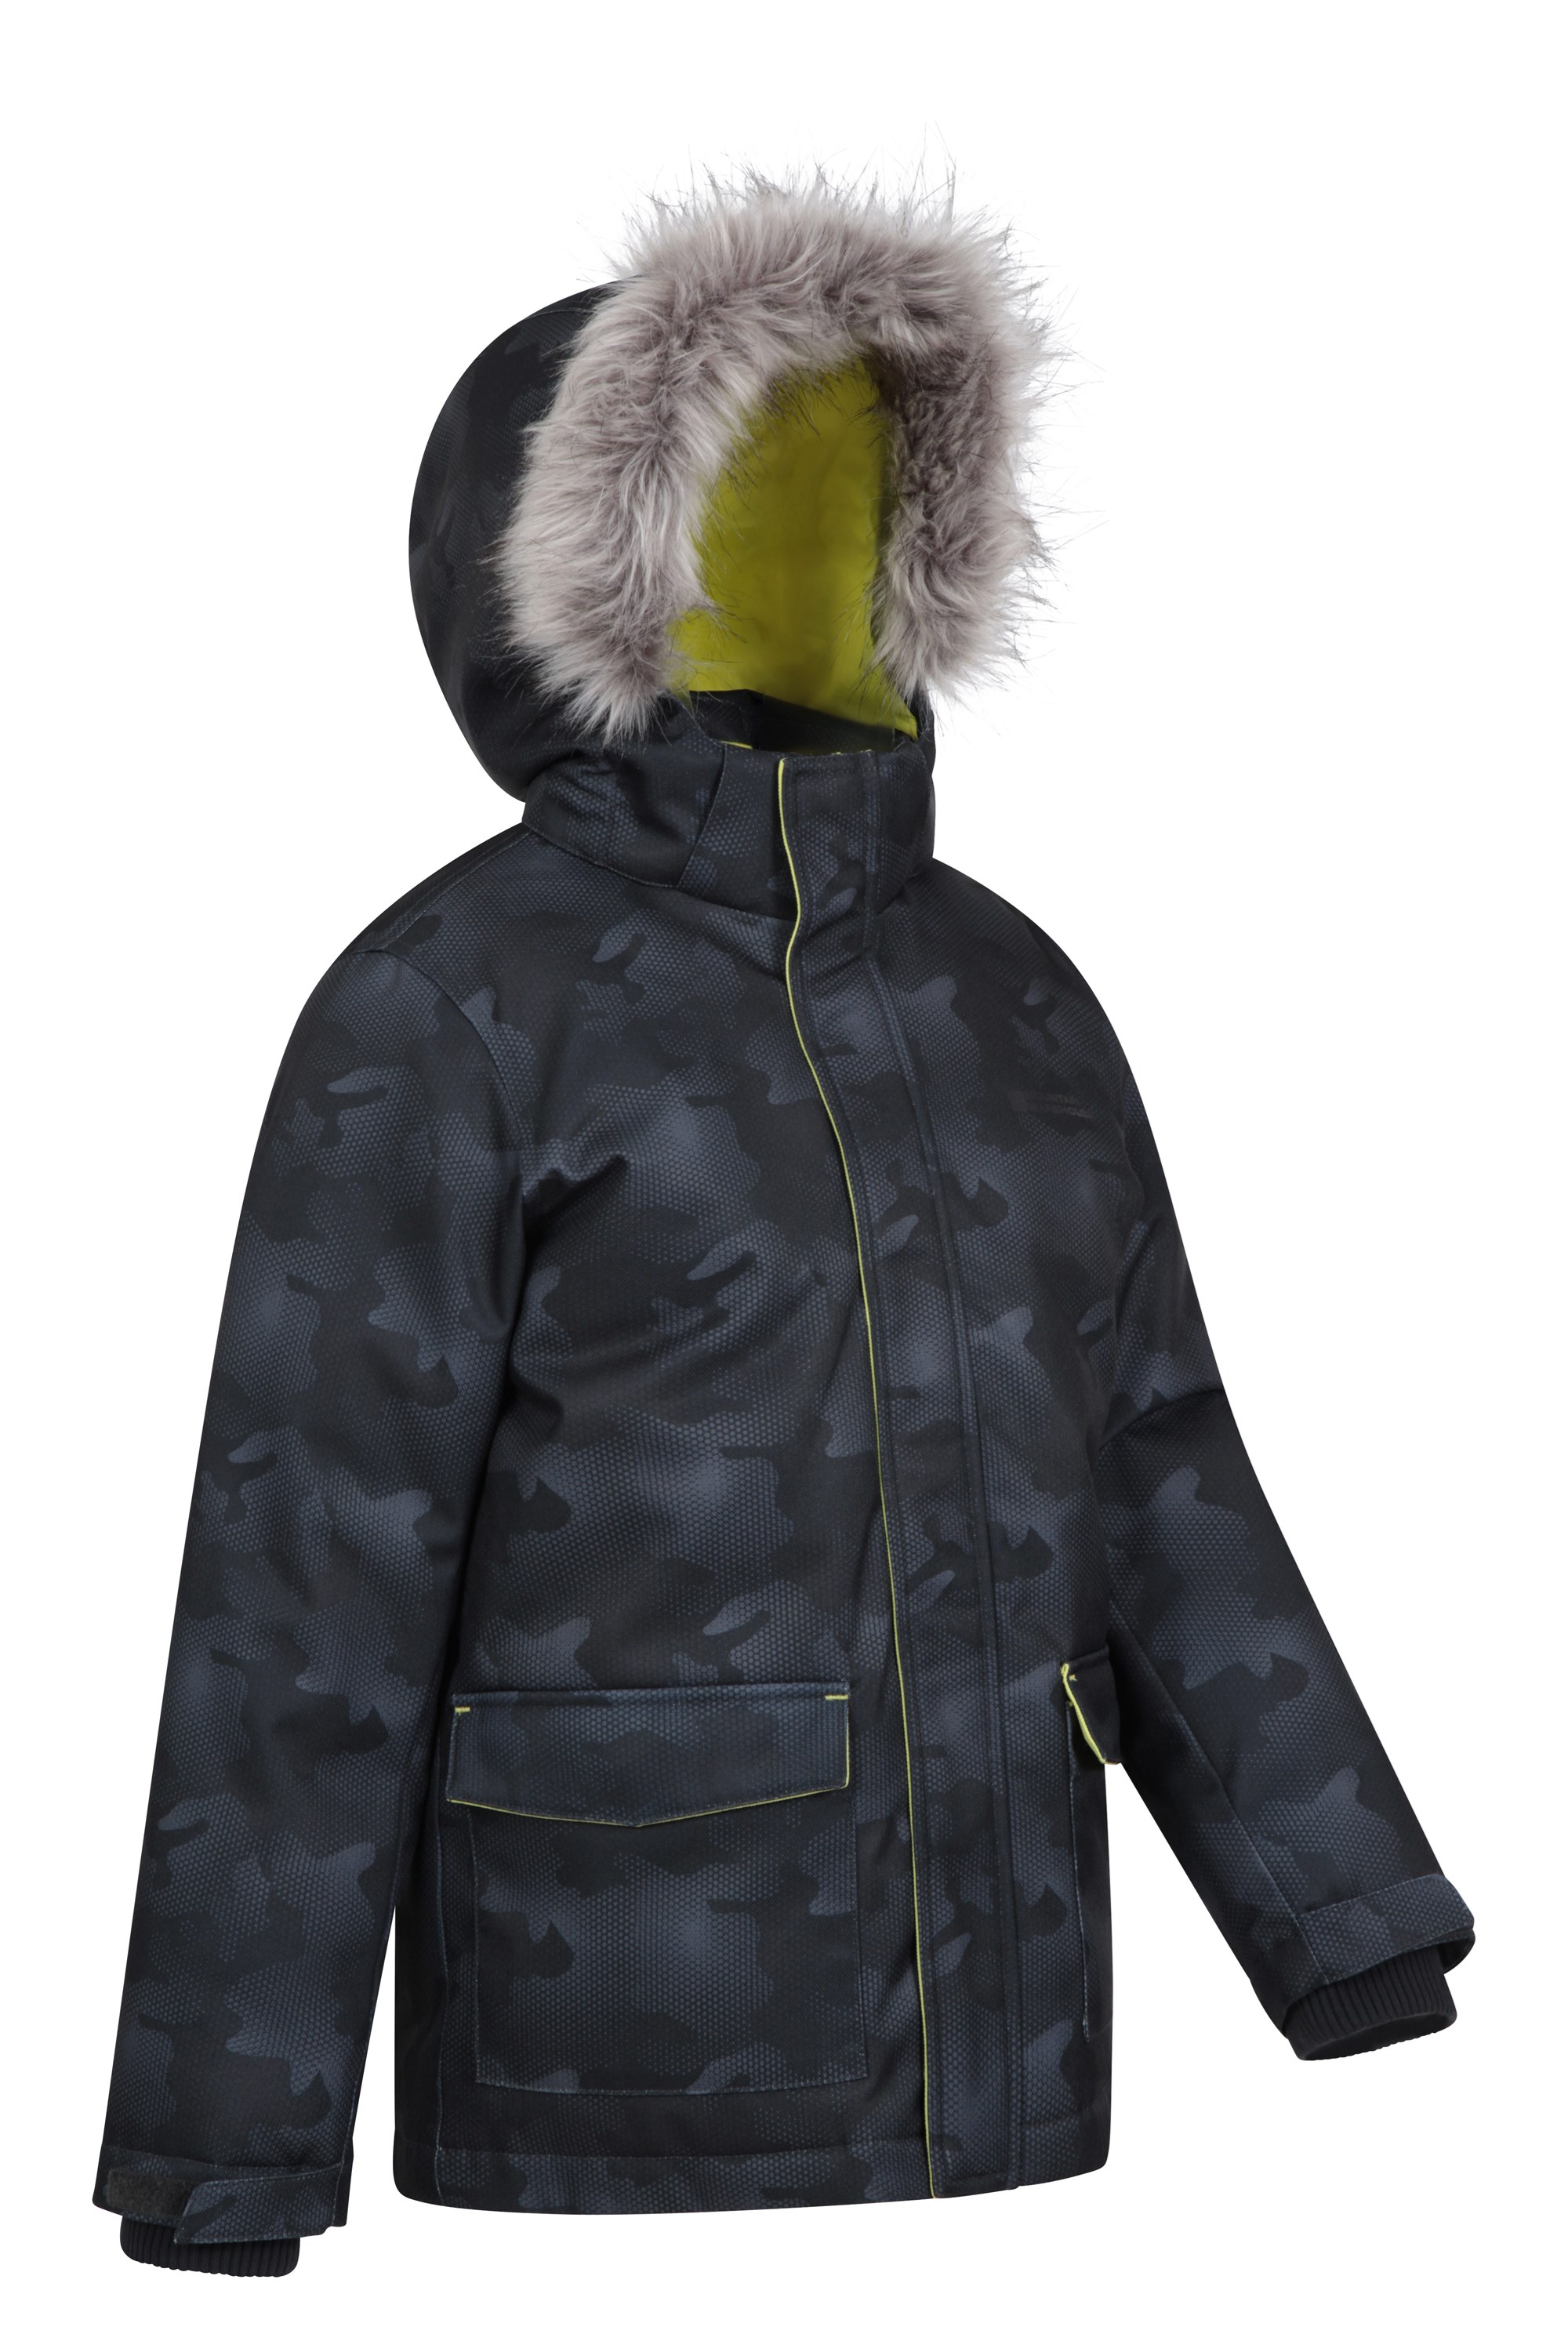 für Extreme Kälte und Schnee wasserdichter Parka für Jungen und Mädchen Ski-Jacke mit Taschen Mountain Warehouse Raptor warme Winterjacke für Kinder Alpin-Jacke 